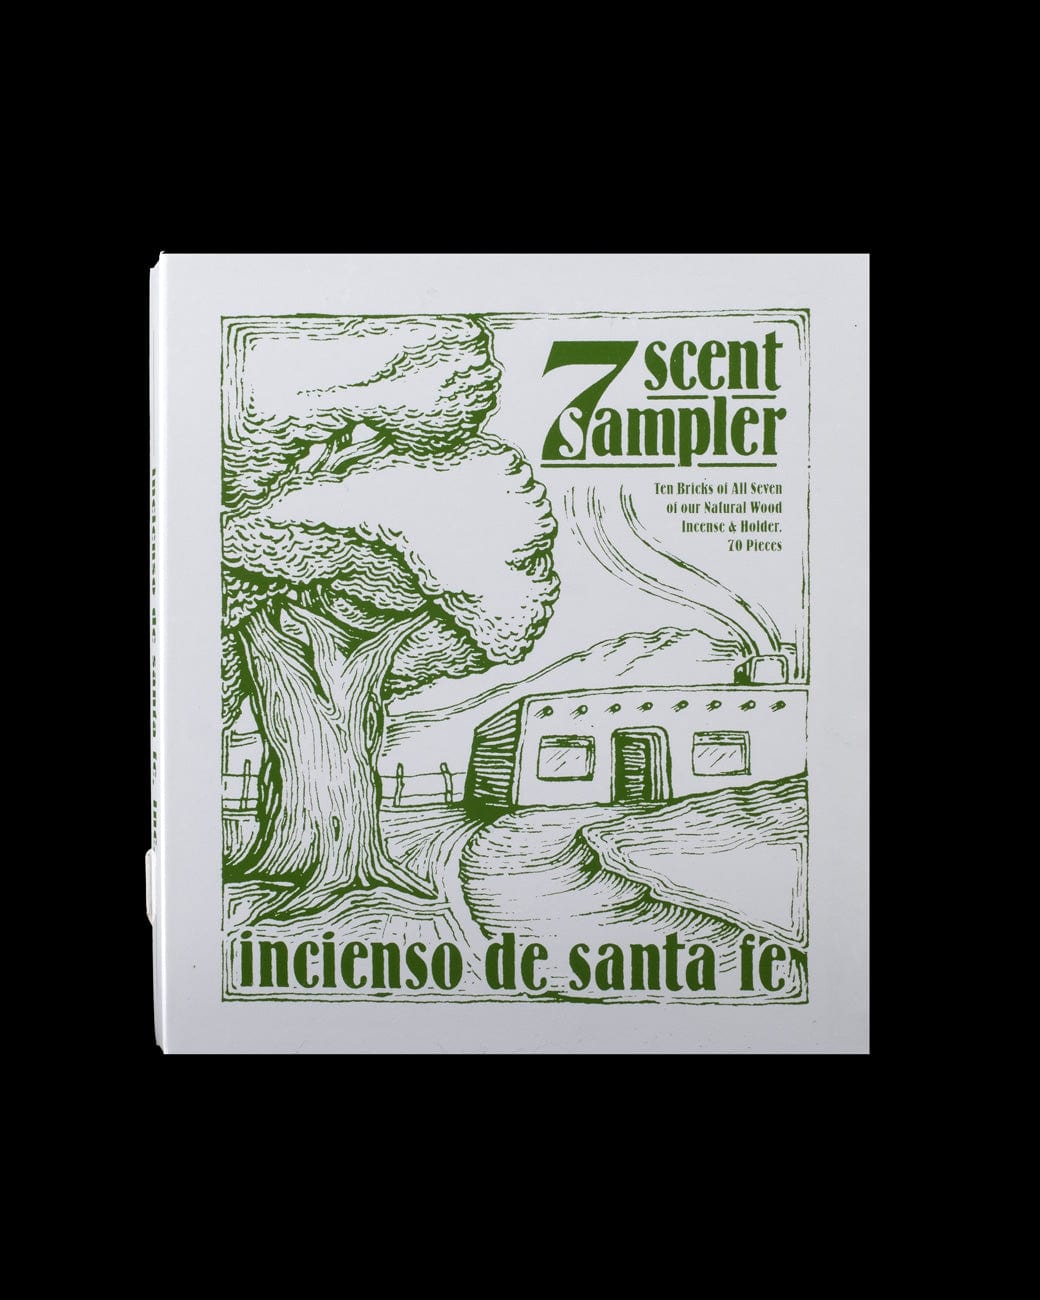 Incienso De Santa Fe - Seven Scent Sampler